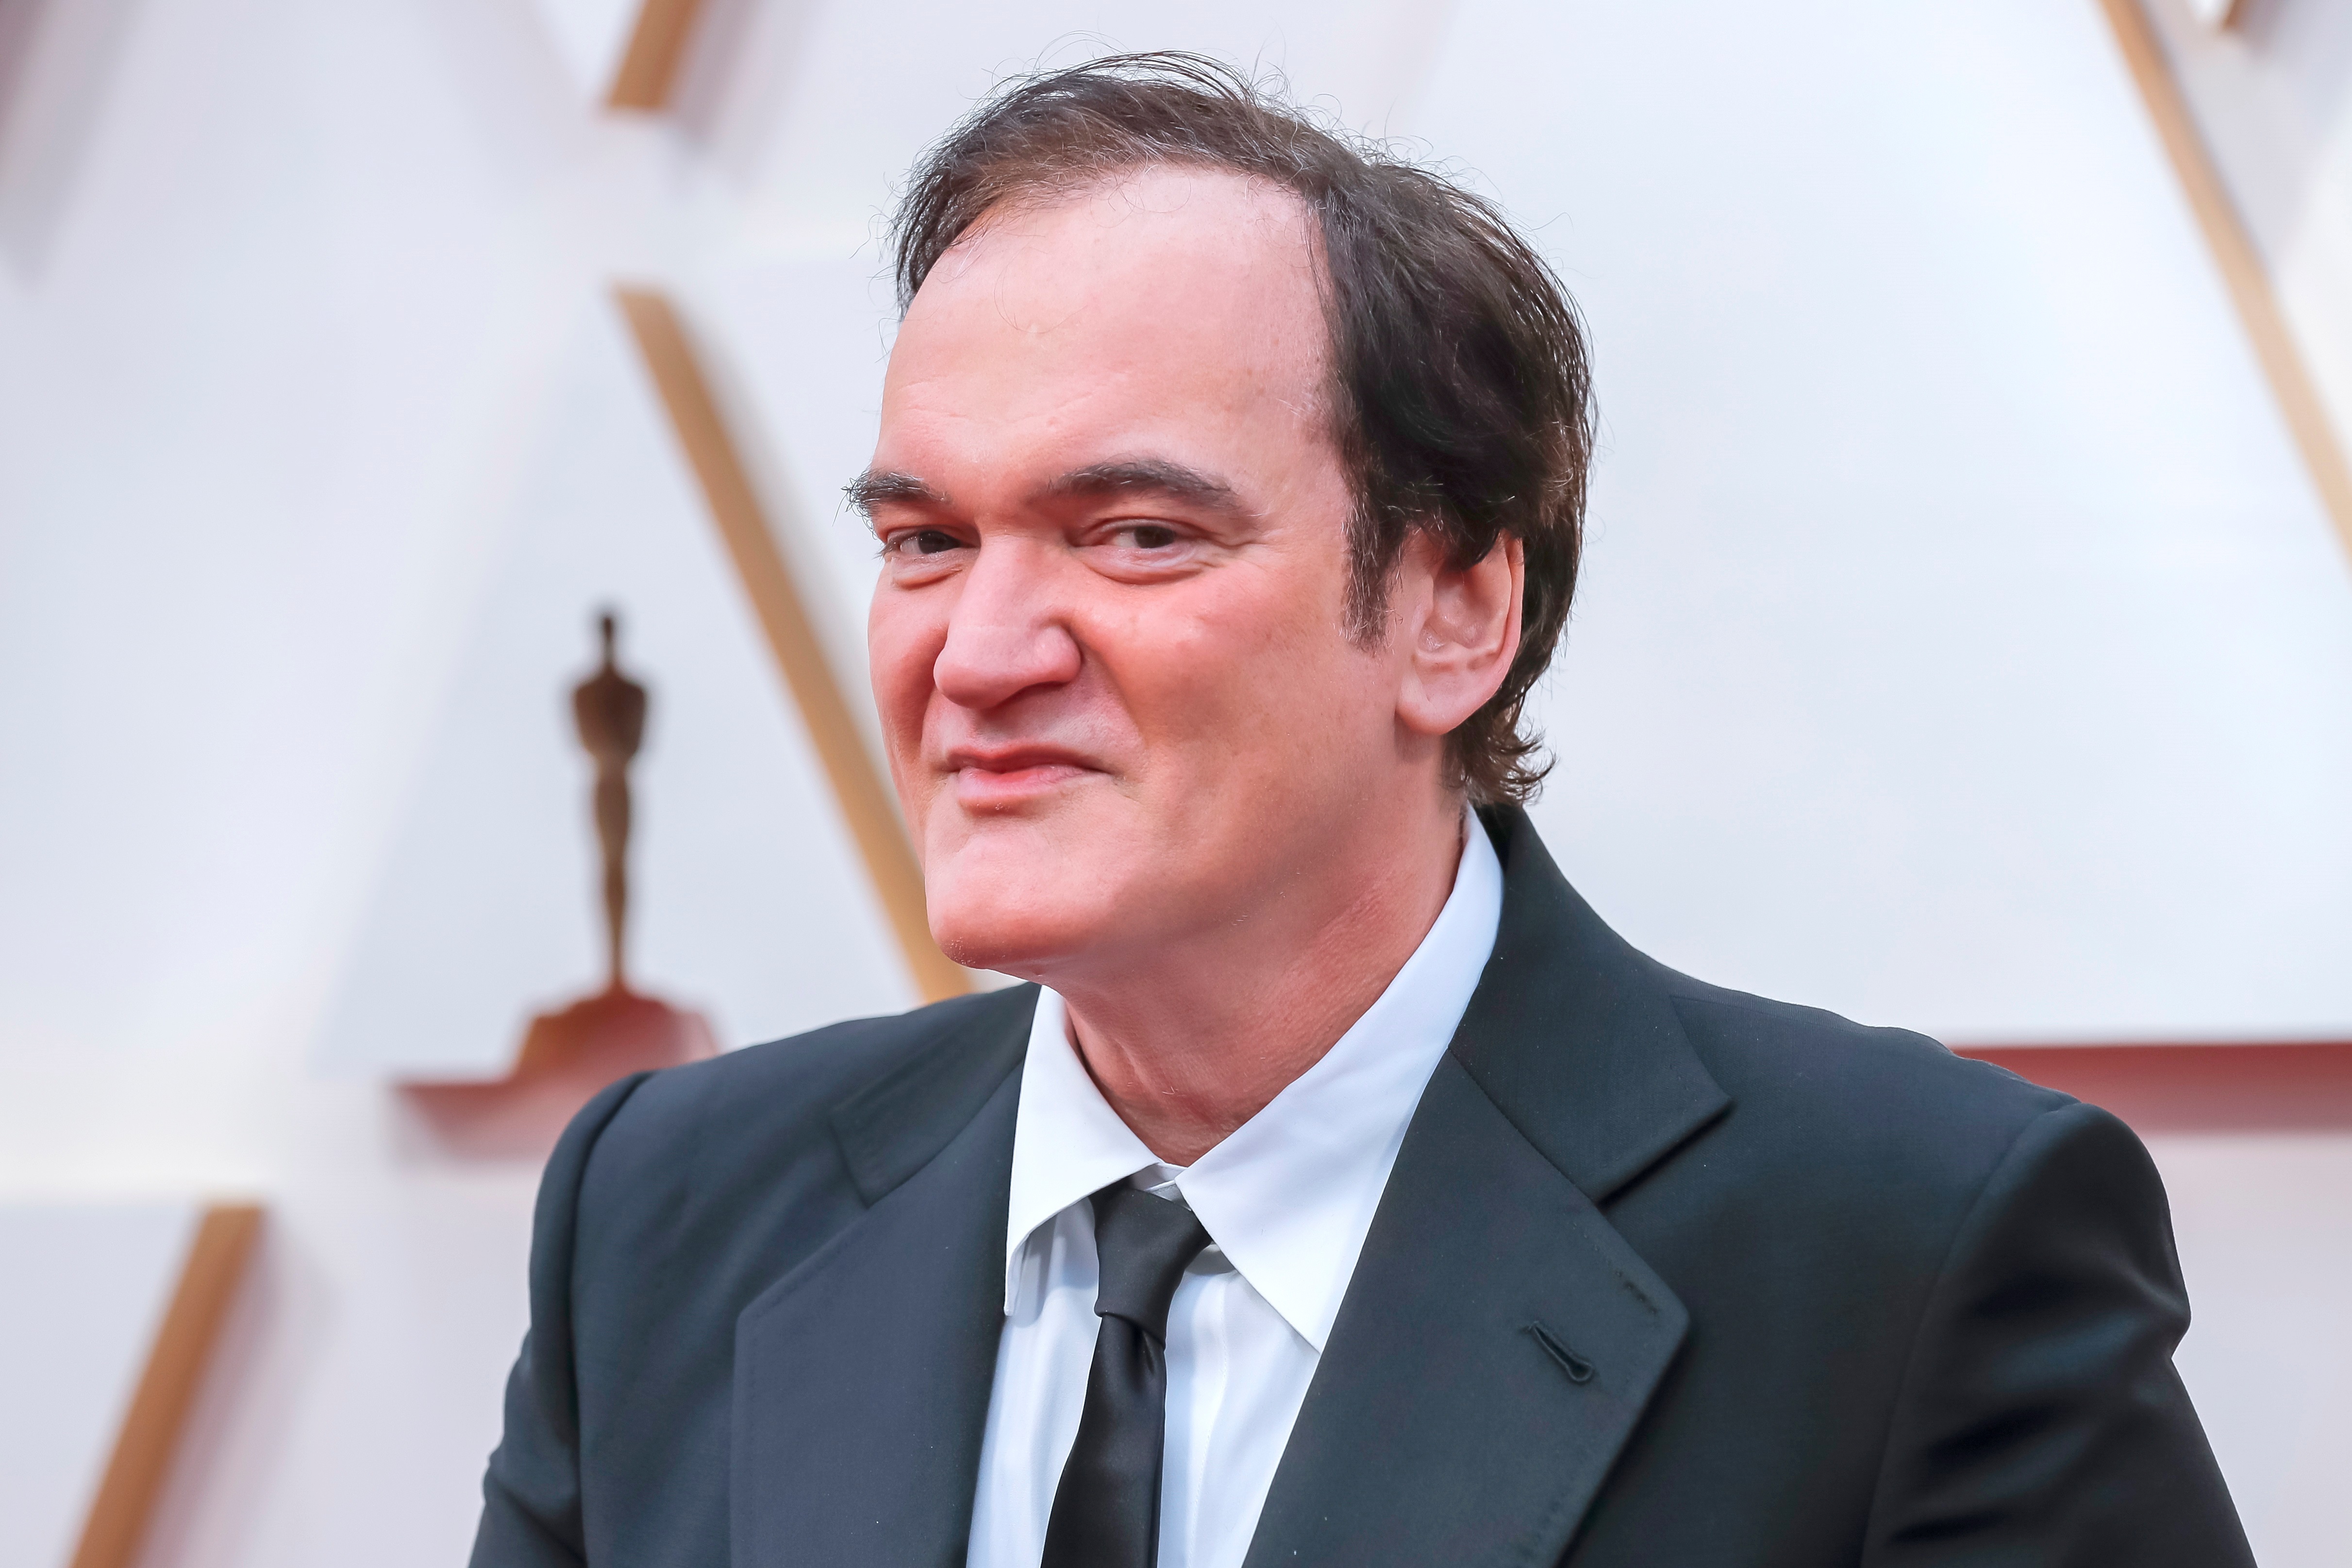 Tarantino publicará dos libros, uno de ellos de "Once Upon a Time in Hollywood"